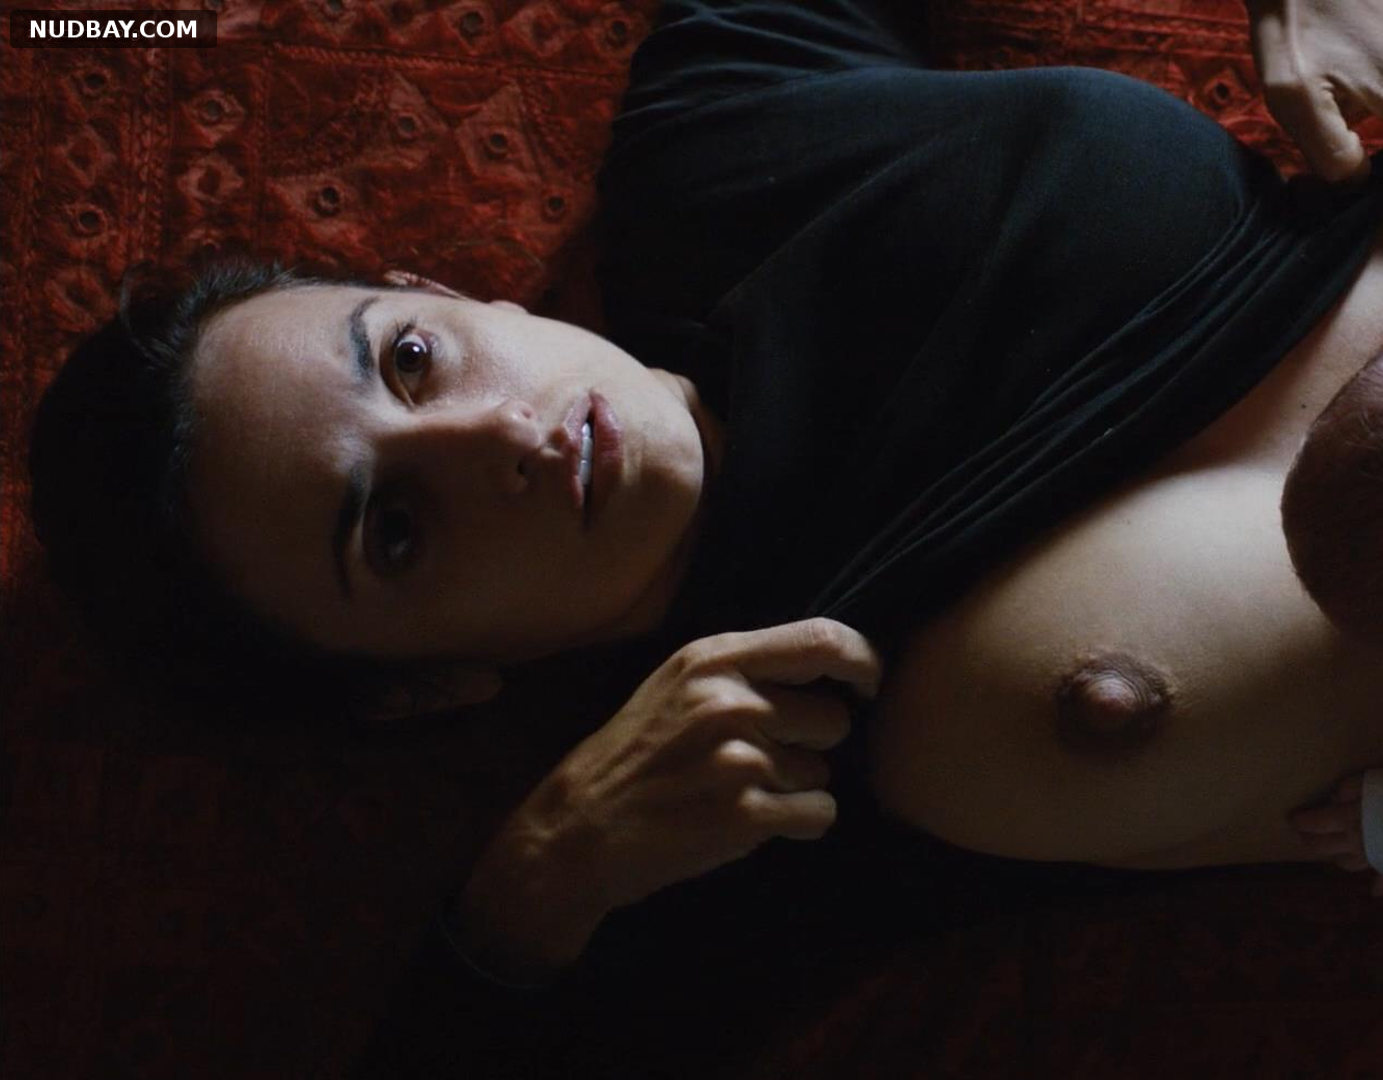 Penelope Cruz nude boobs in Venuto Al Mondo (2012)